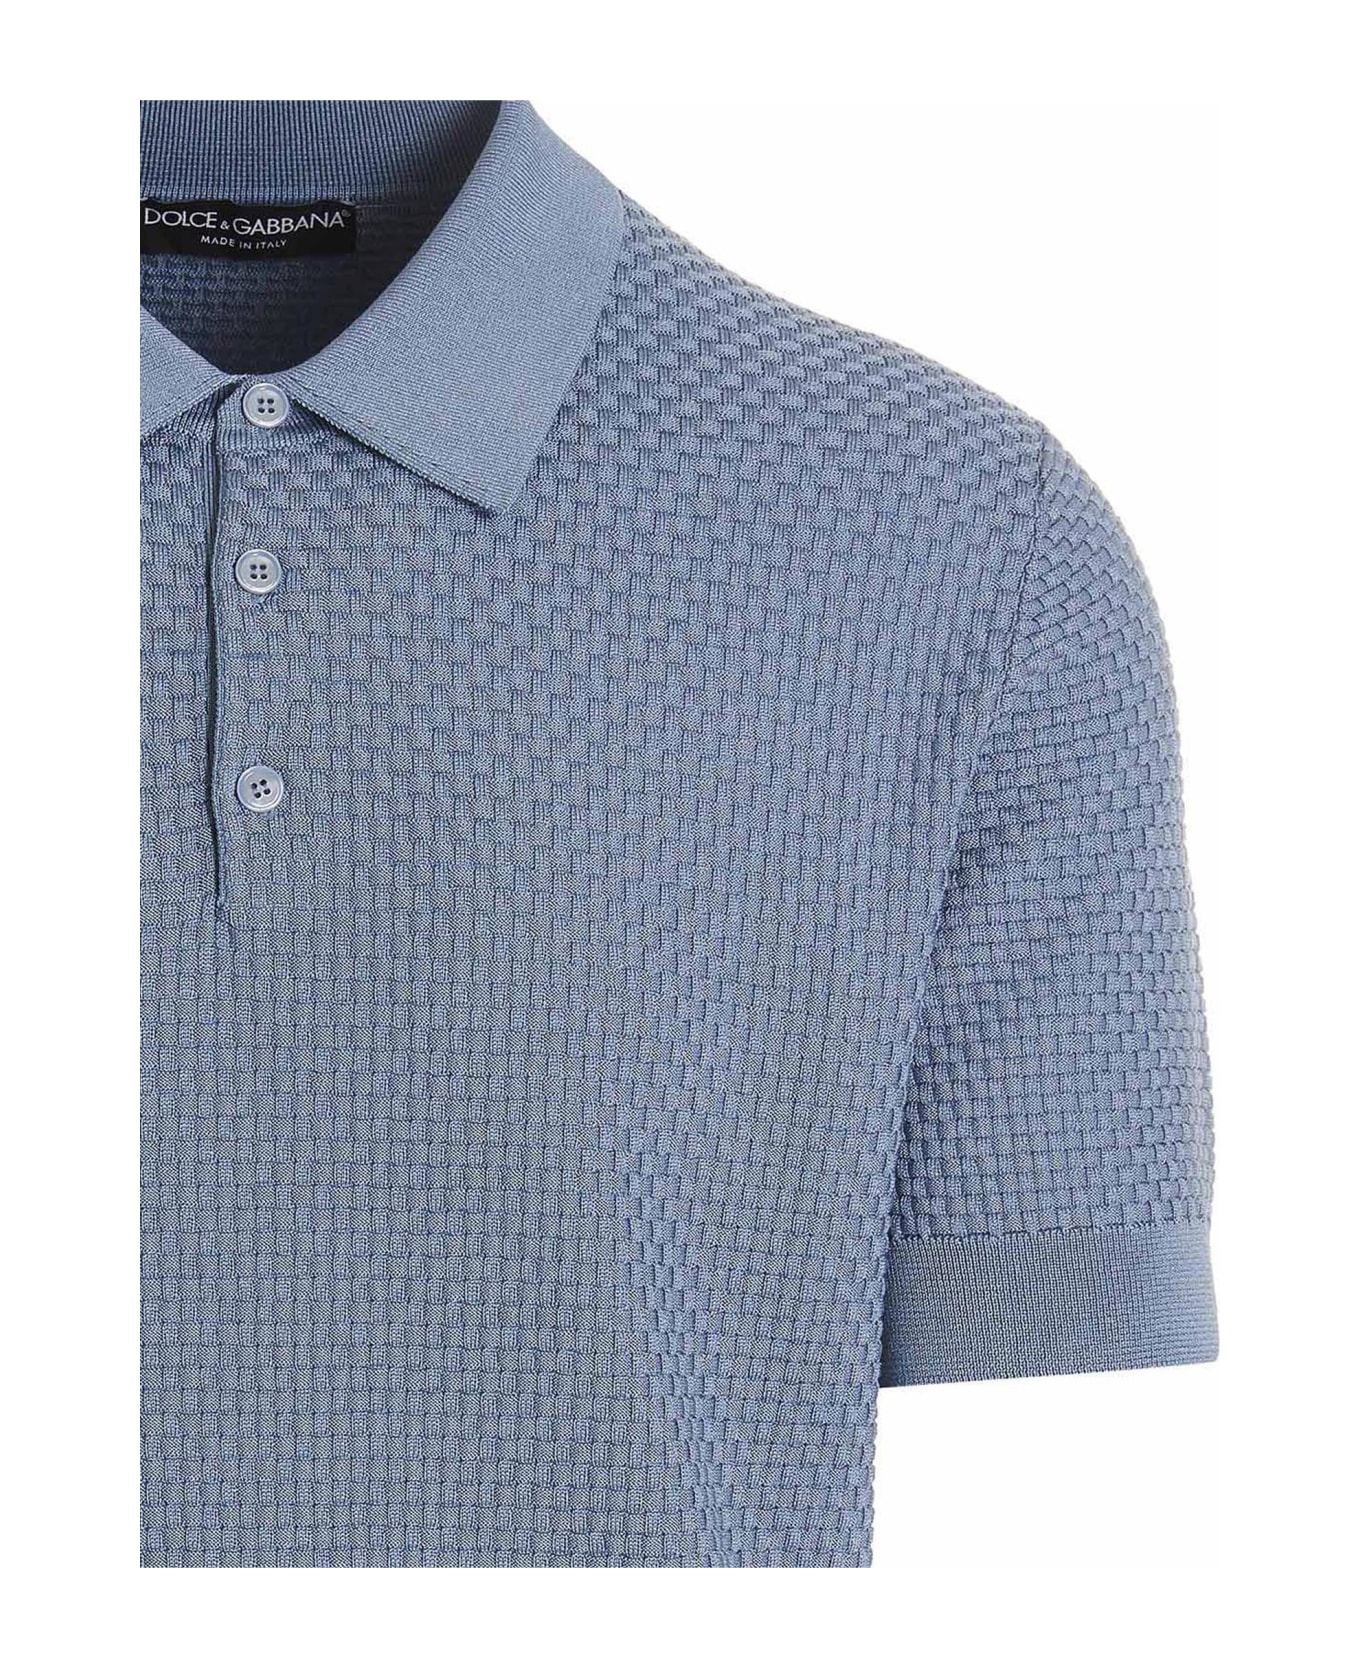 Dolce & Gabbana Regular Fit Polo Shirt - Light Blue ポロシャツ